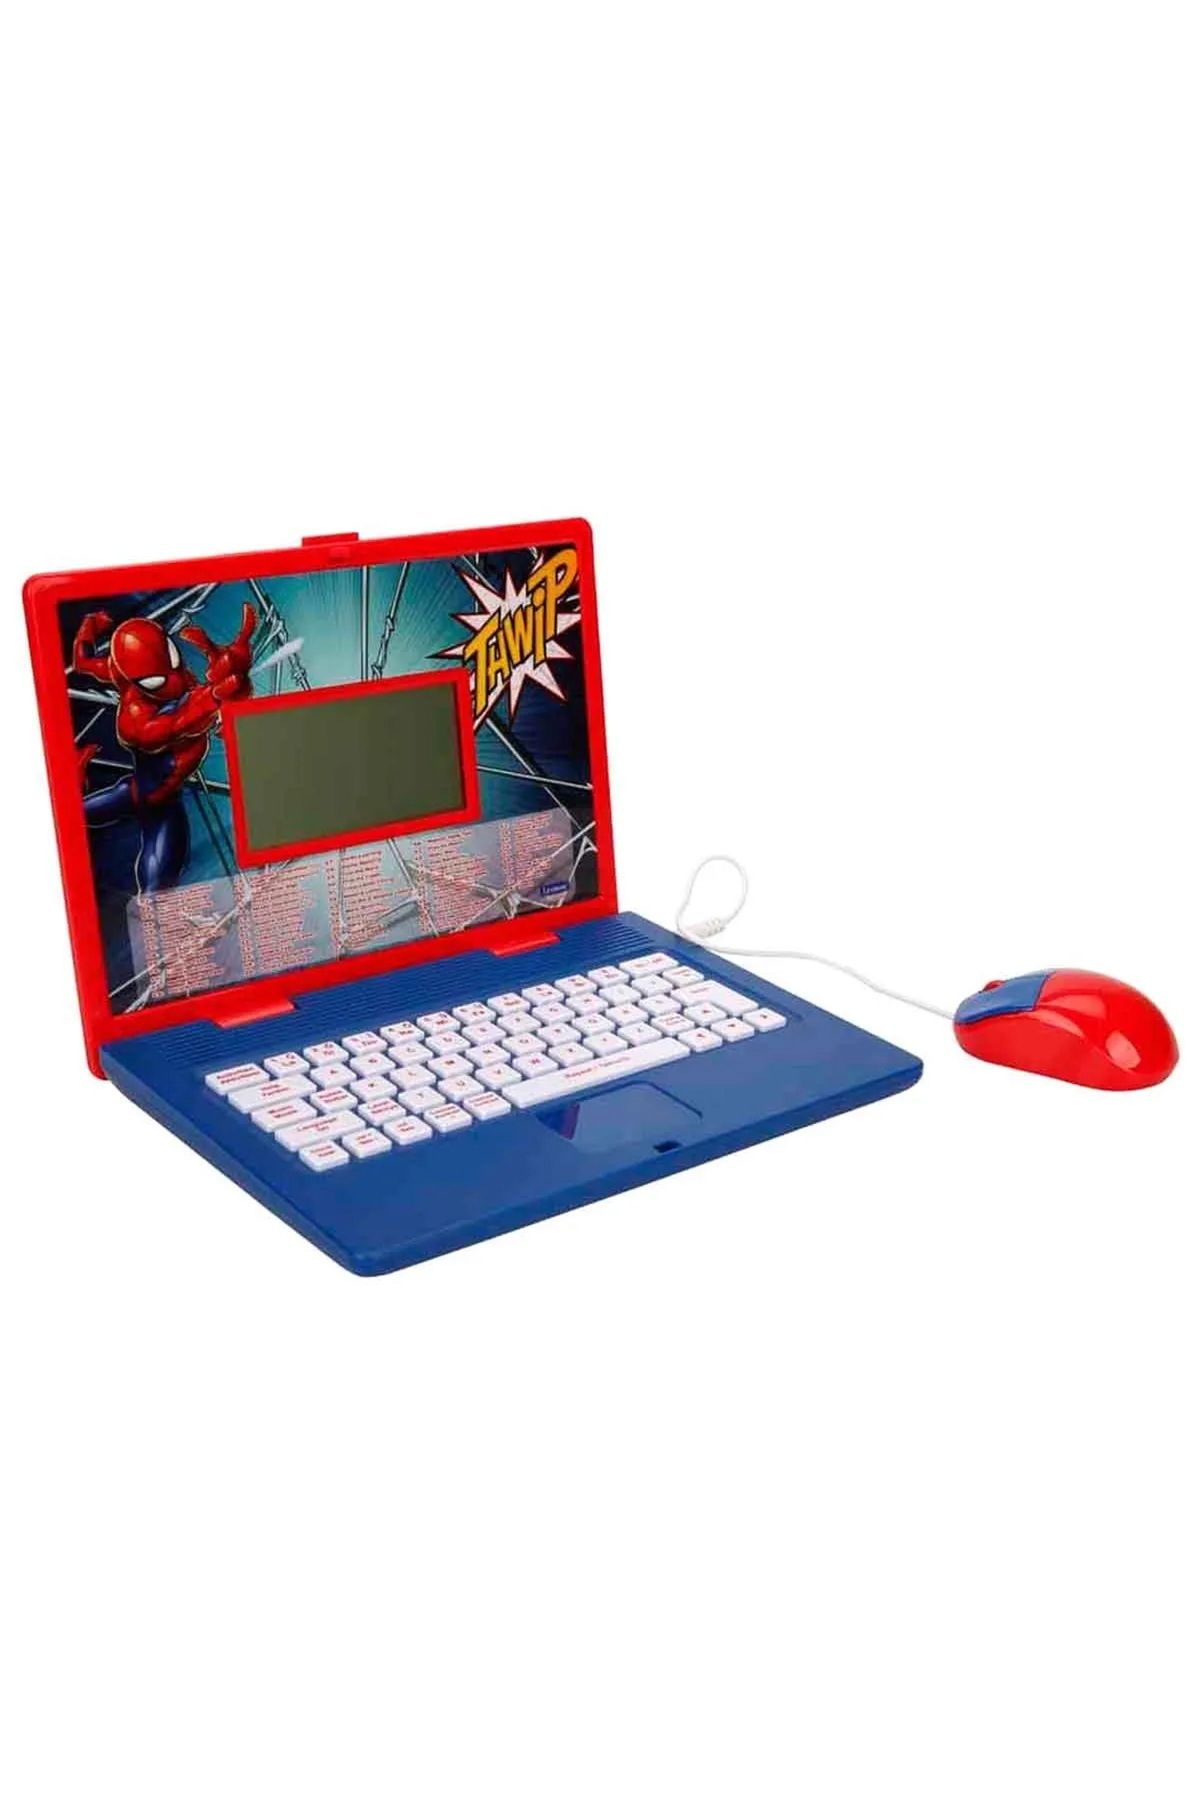 Tower Toys Disney Lexibook İngilizce Türkçe Laptop Eğlenceli Etkileşimli Süper Diz Üstü Laptop 124 Fonksiyolu